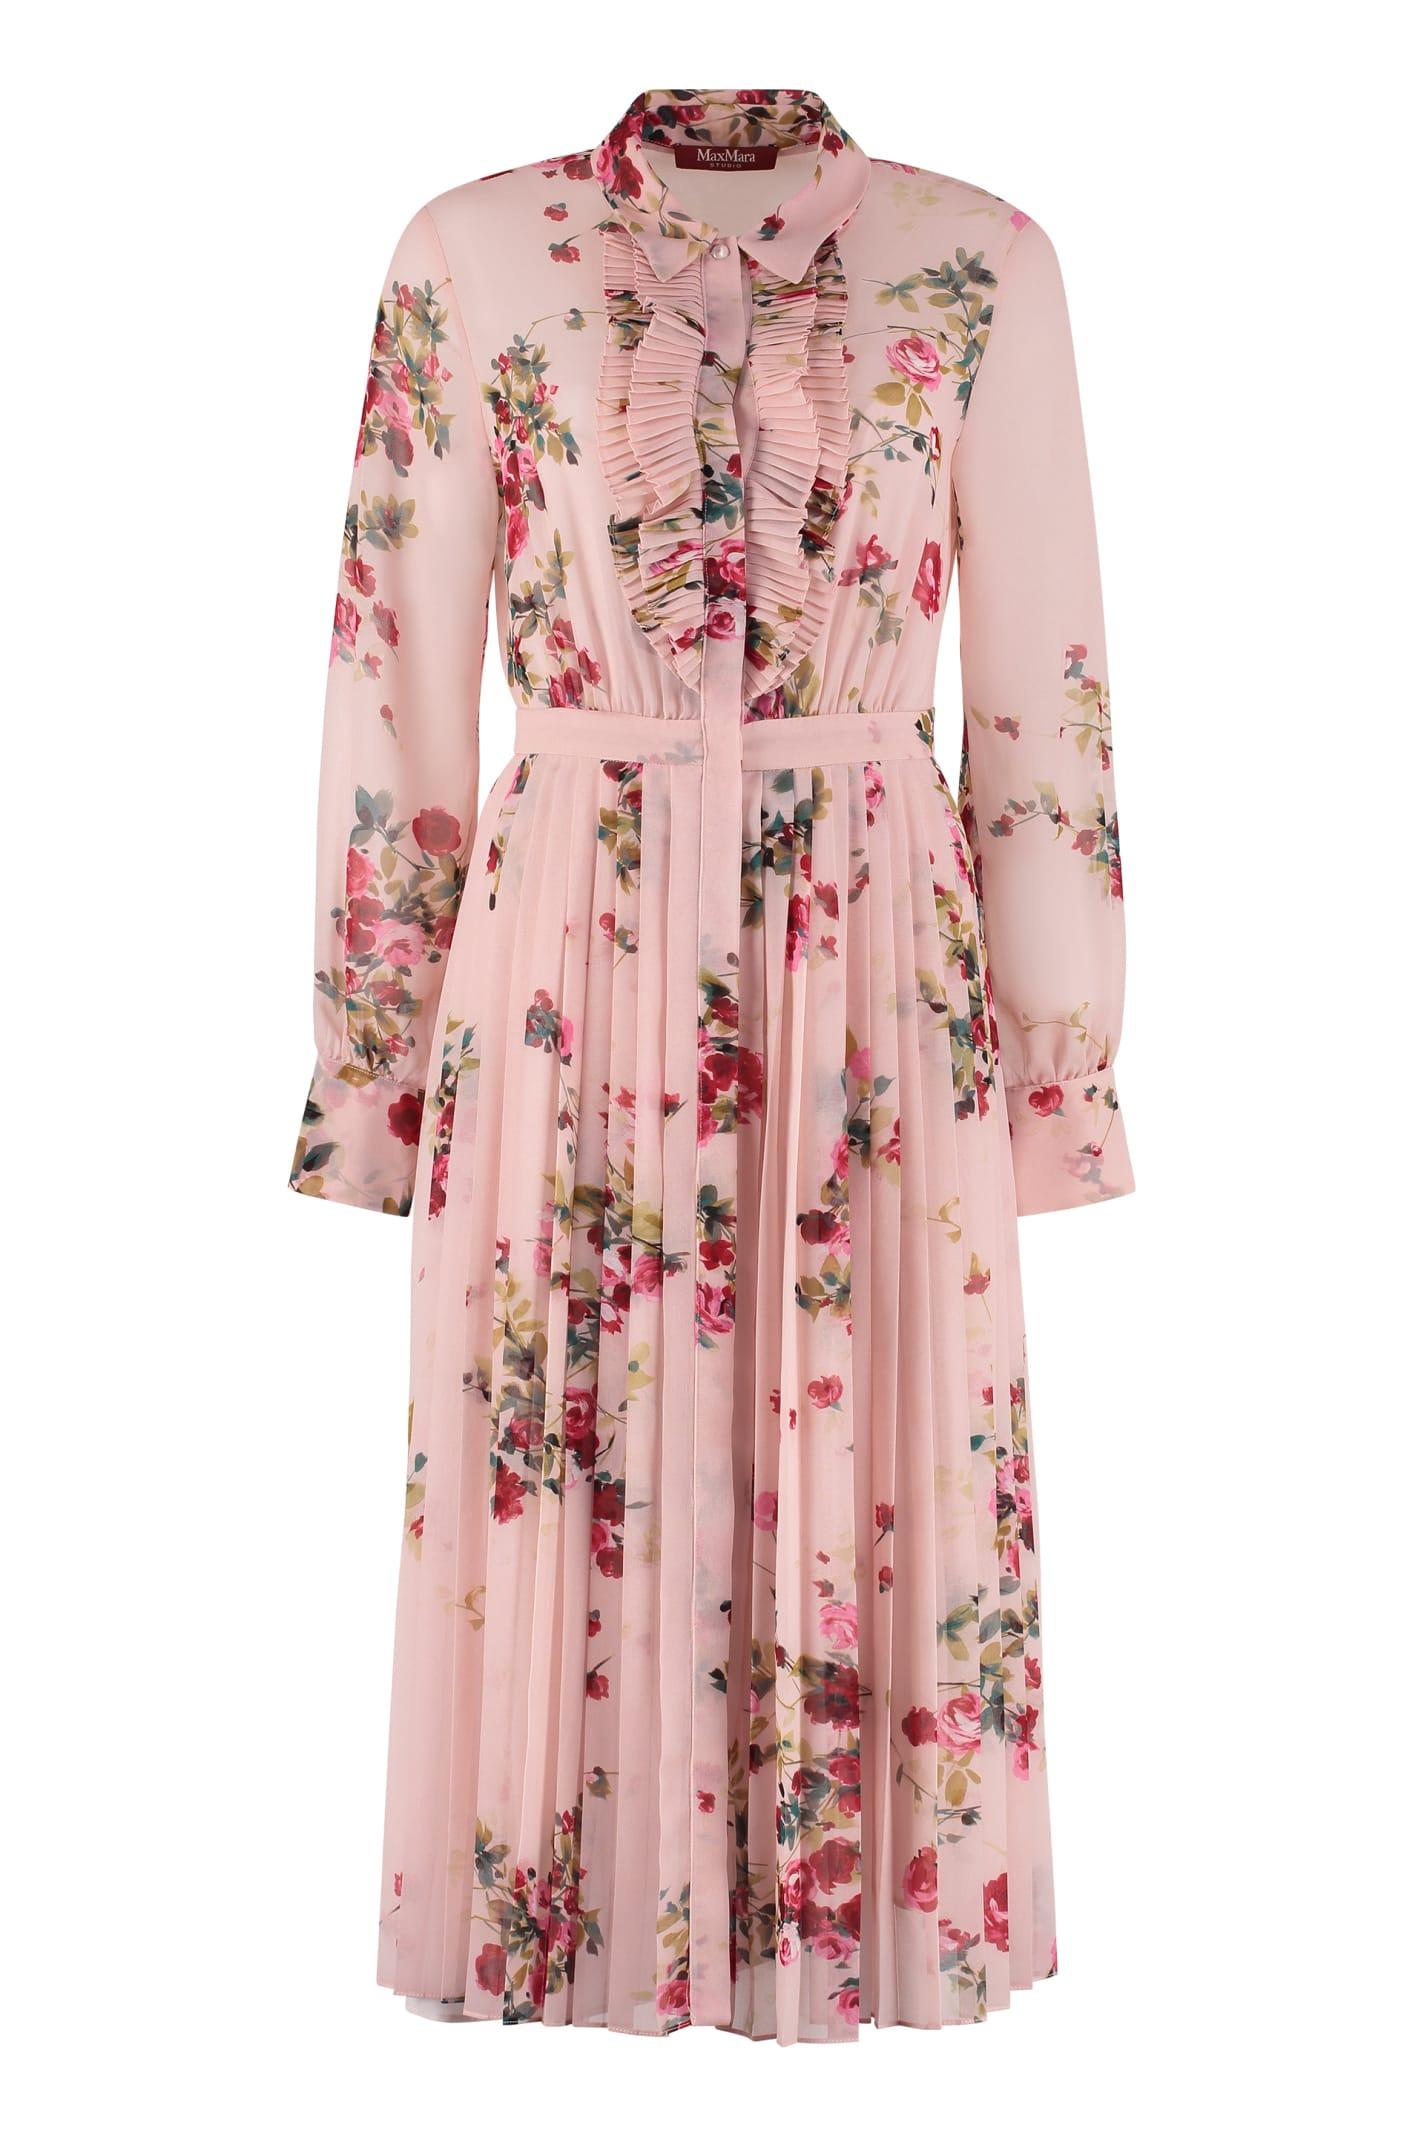 Max Mara Studio Printed Georgette Dress in Pink | Lyst